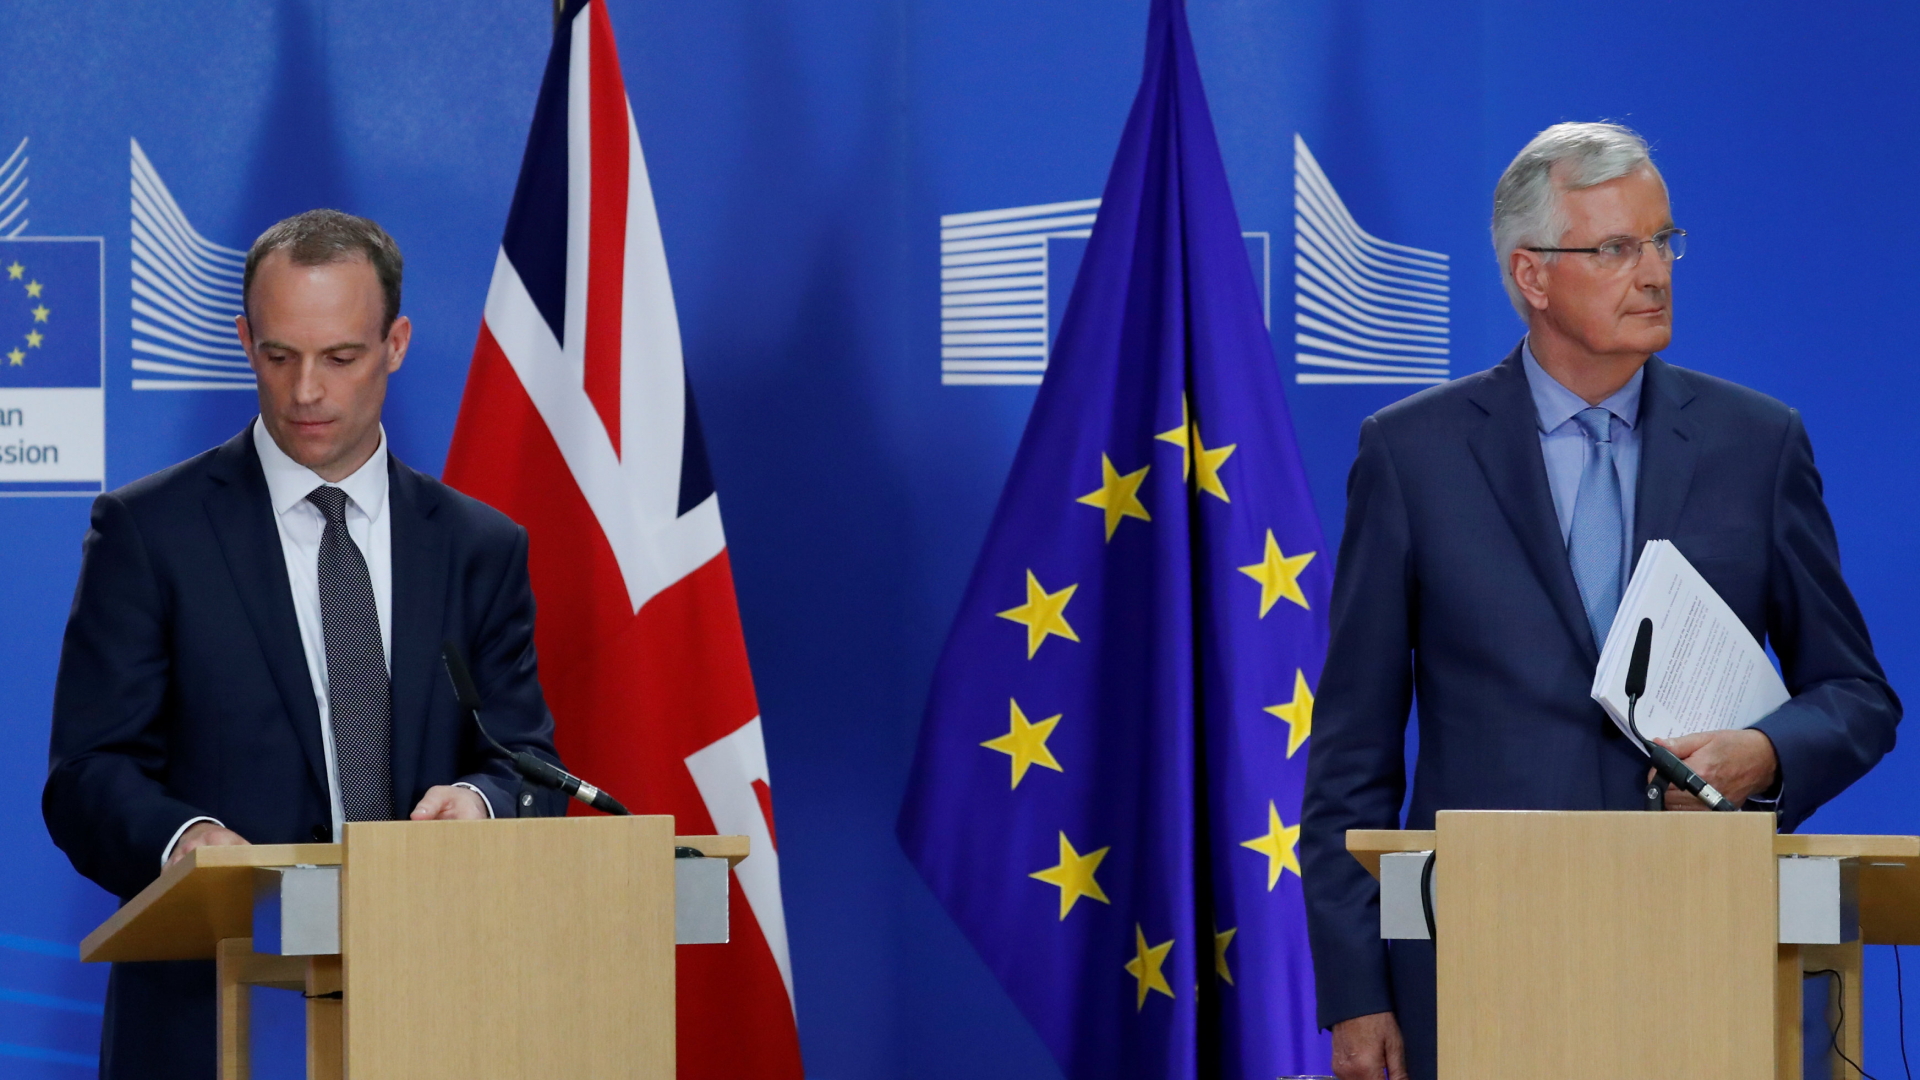 Der britische Brexit-Minister Dominic Raab and der Verhandlungsführer der EU, Michel Barnier, bei einer Pressekonferenz in Brüssel